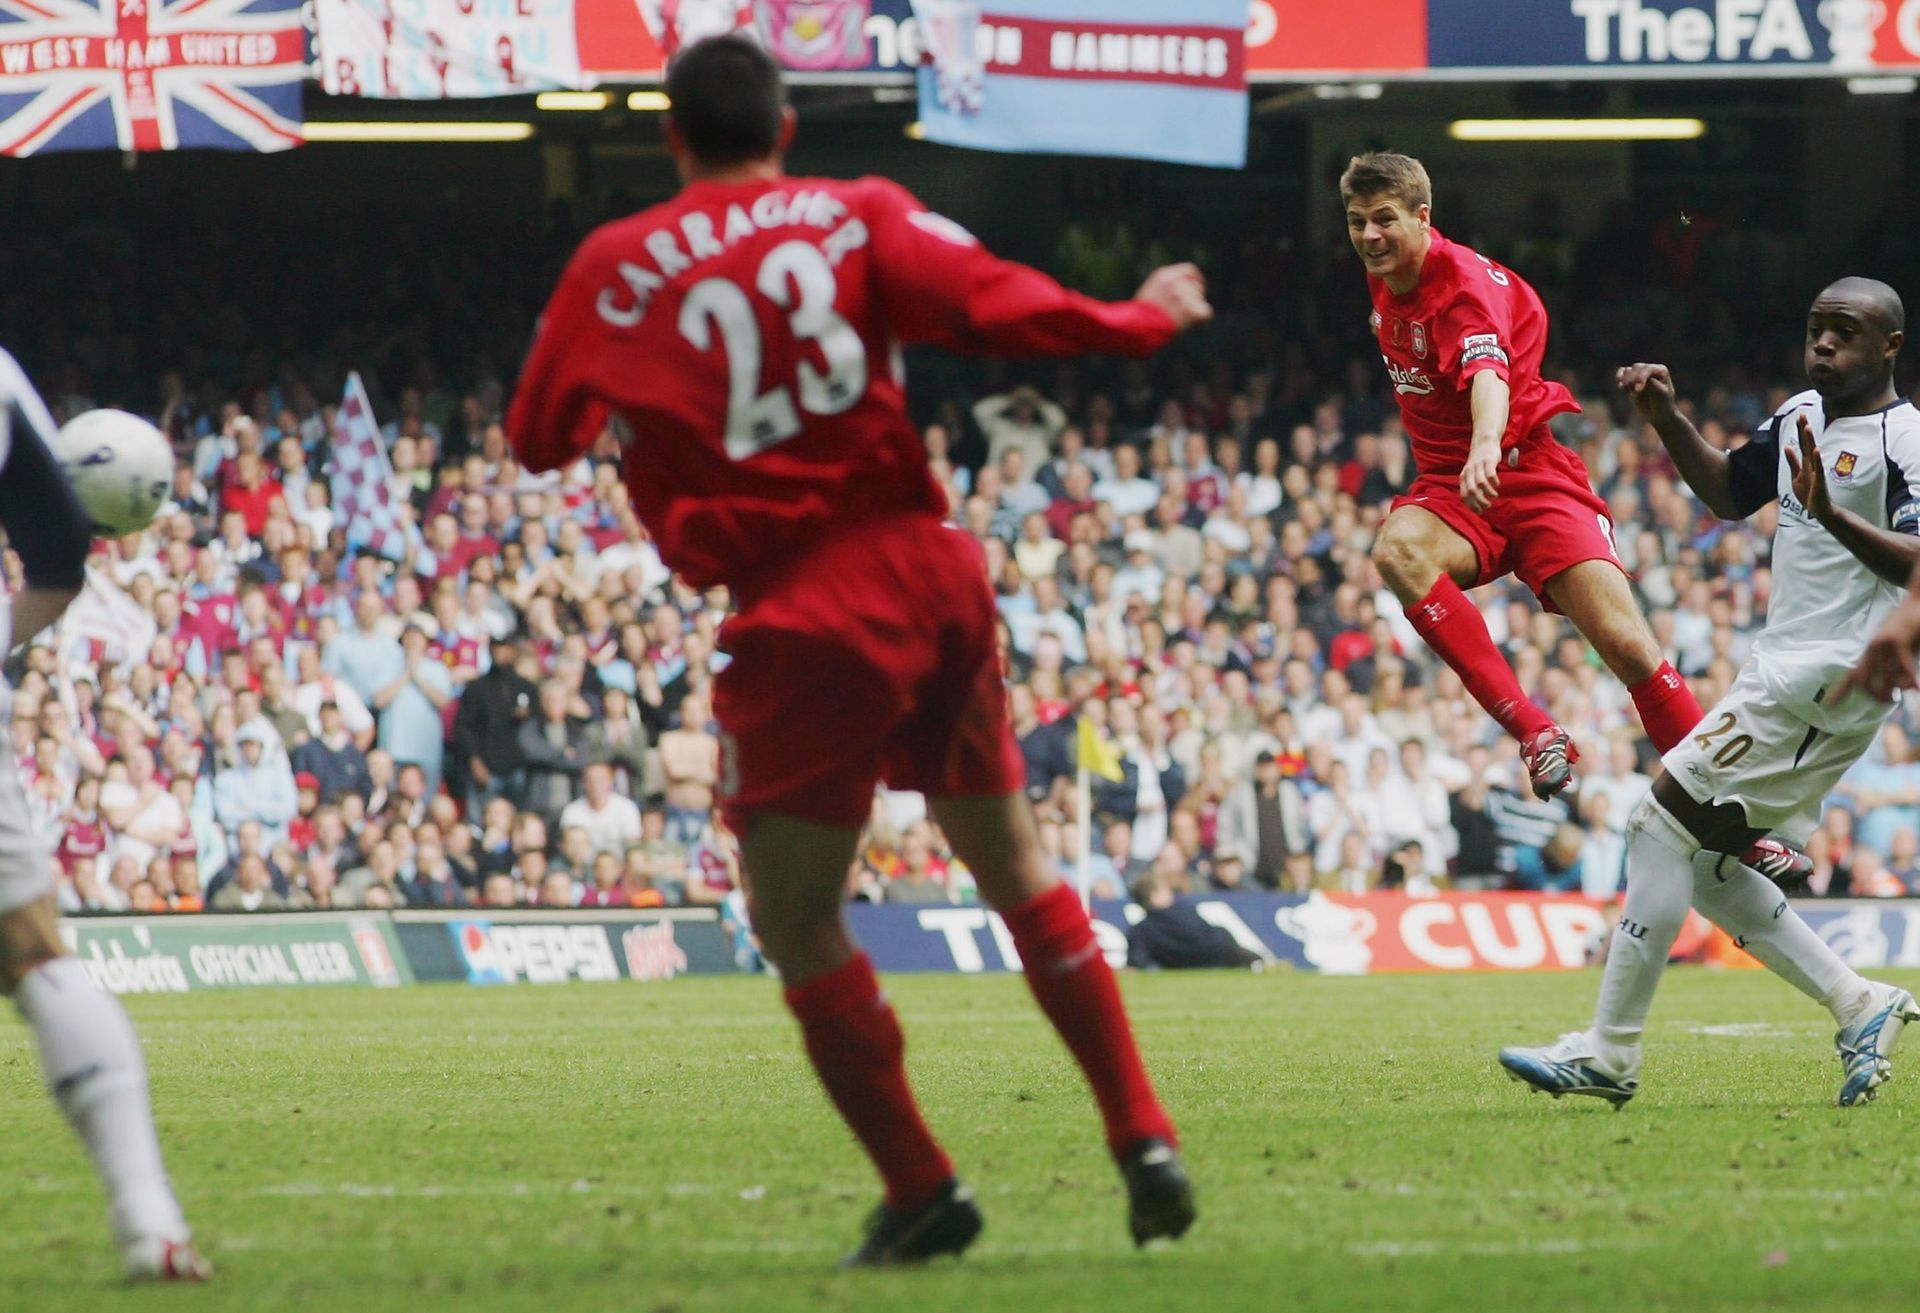 2006 г. - Финалът на Джерард и неговия незабравим удар от над 30 метра в последната минута, който спаси Ливърпул от загуба - 3:3 срещу Уест Хем и победа с дузпи след това